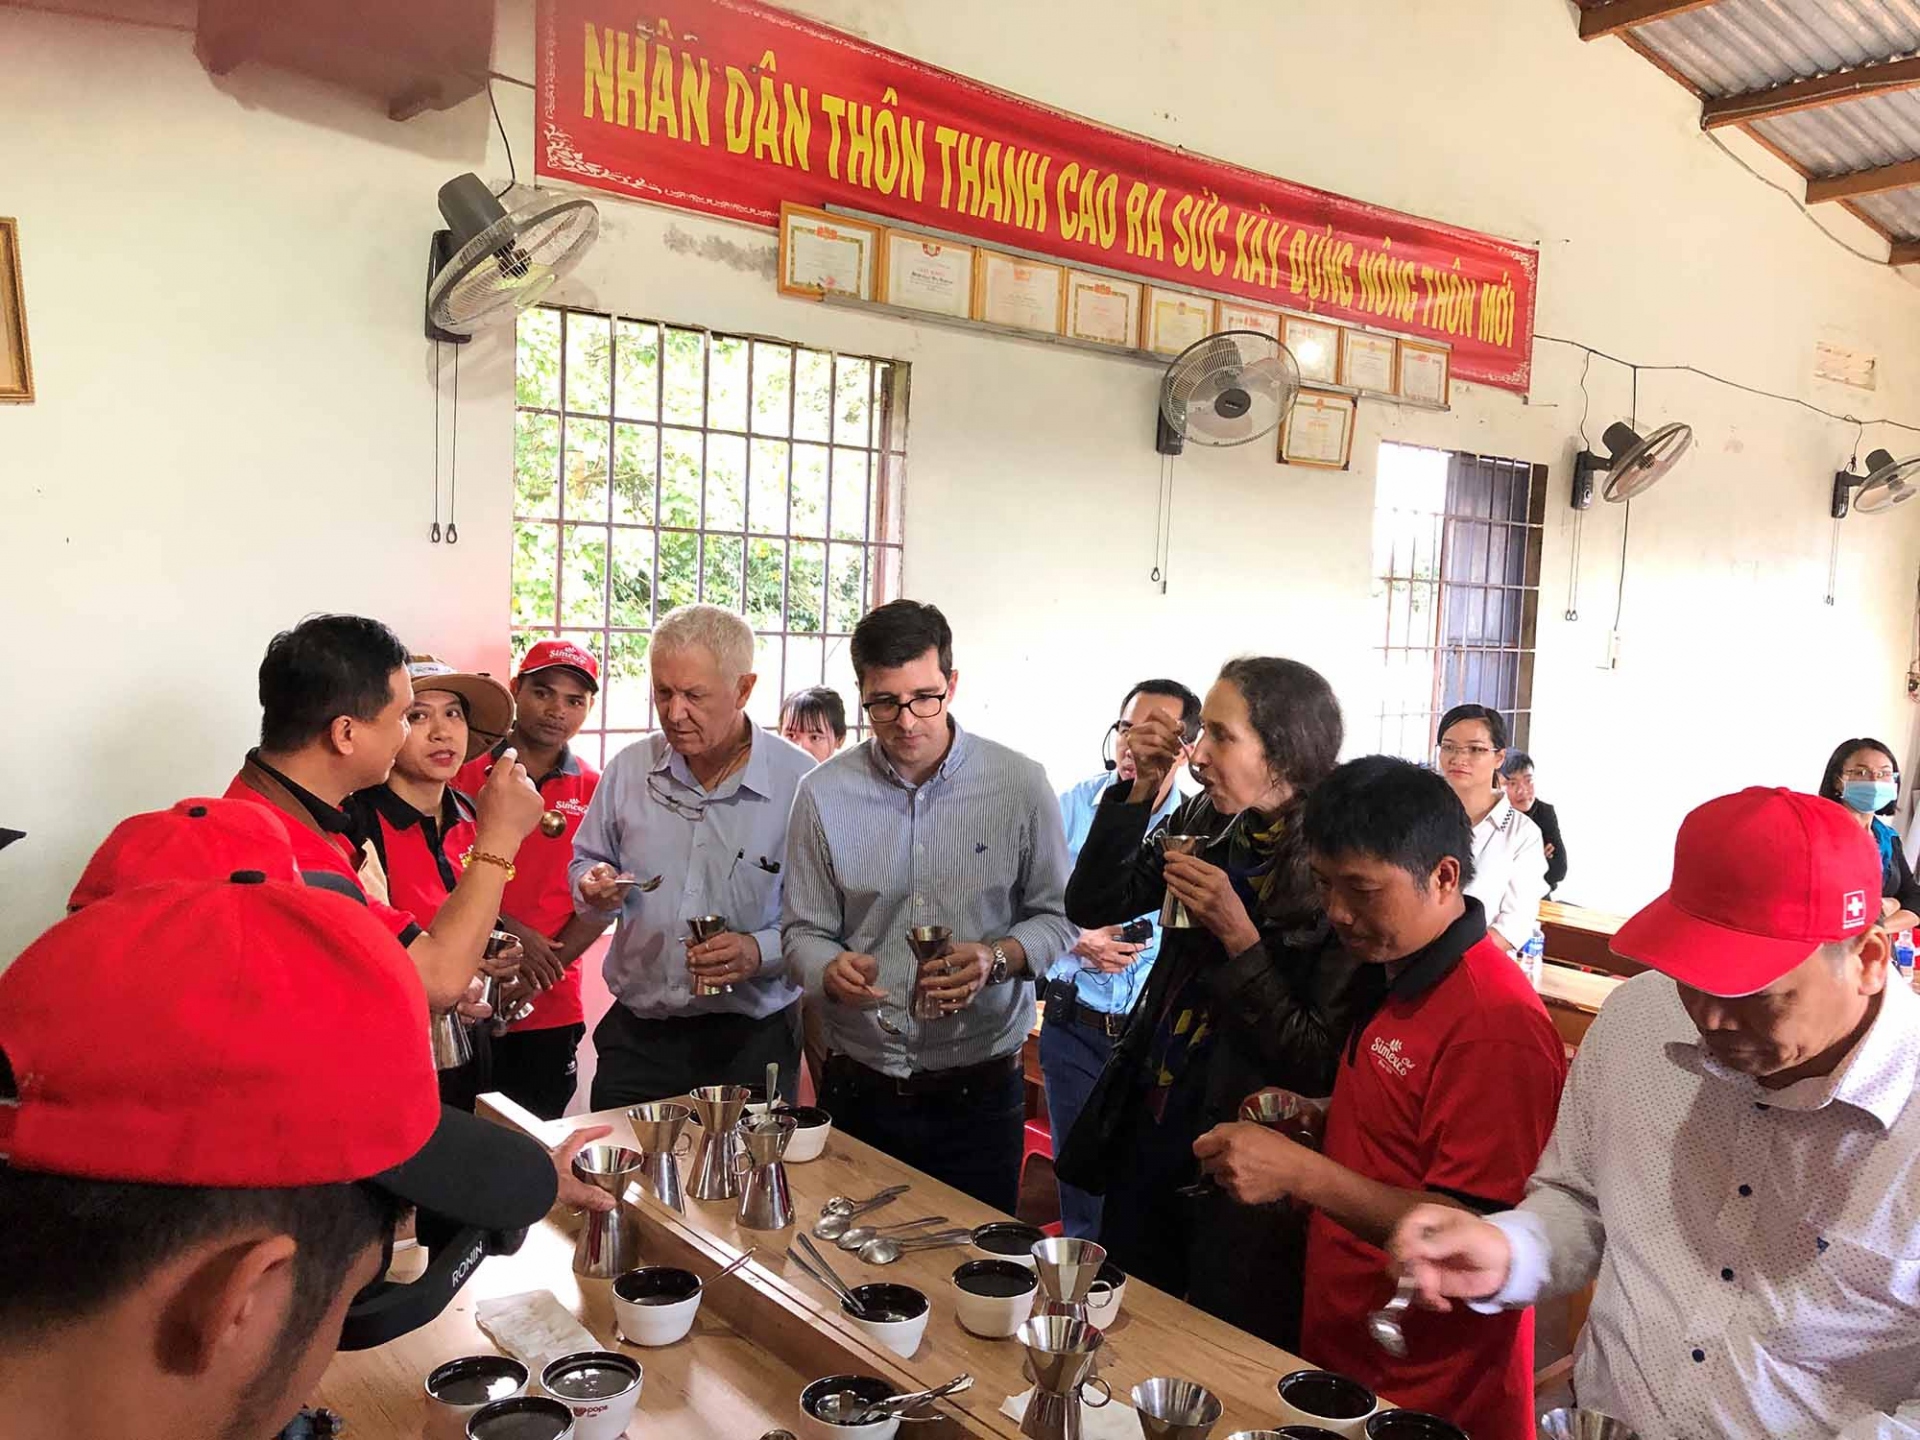 Đại sứ Thụy Sỹ và nhân viên Đại sứ quán cùng thưởng thức cà phê với những người nông dân địa phương tại huyện Krông Năng, tỉnh Đắk Lắk. Đây là những nông dân đã tham gia vào dự án sản xuất cà phê bền vững do Thụy Sỹ tại trợ.